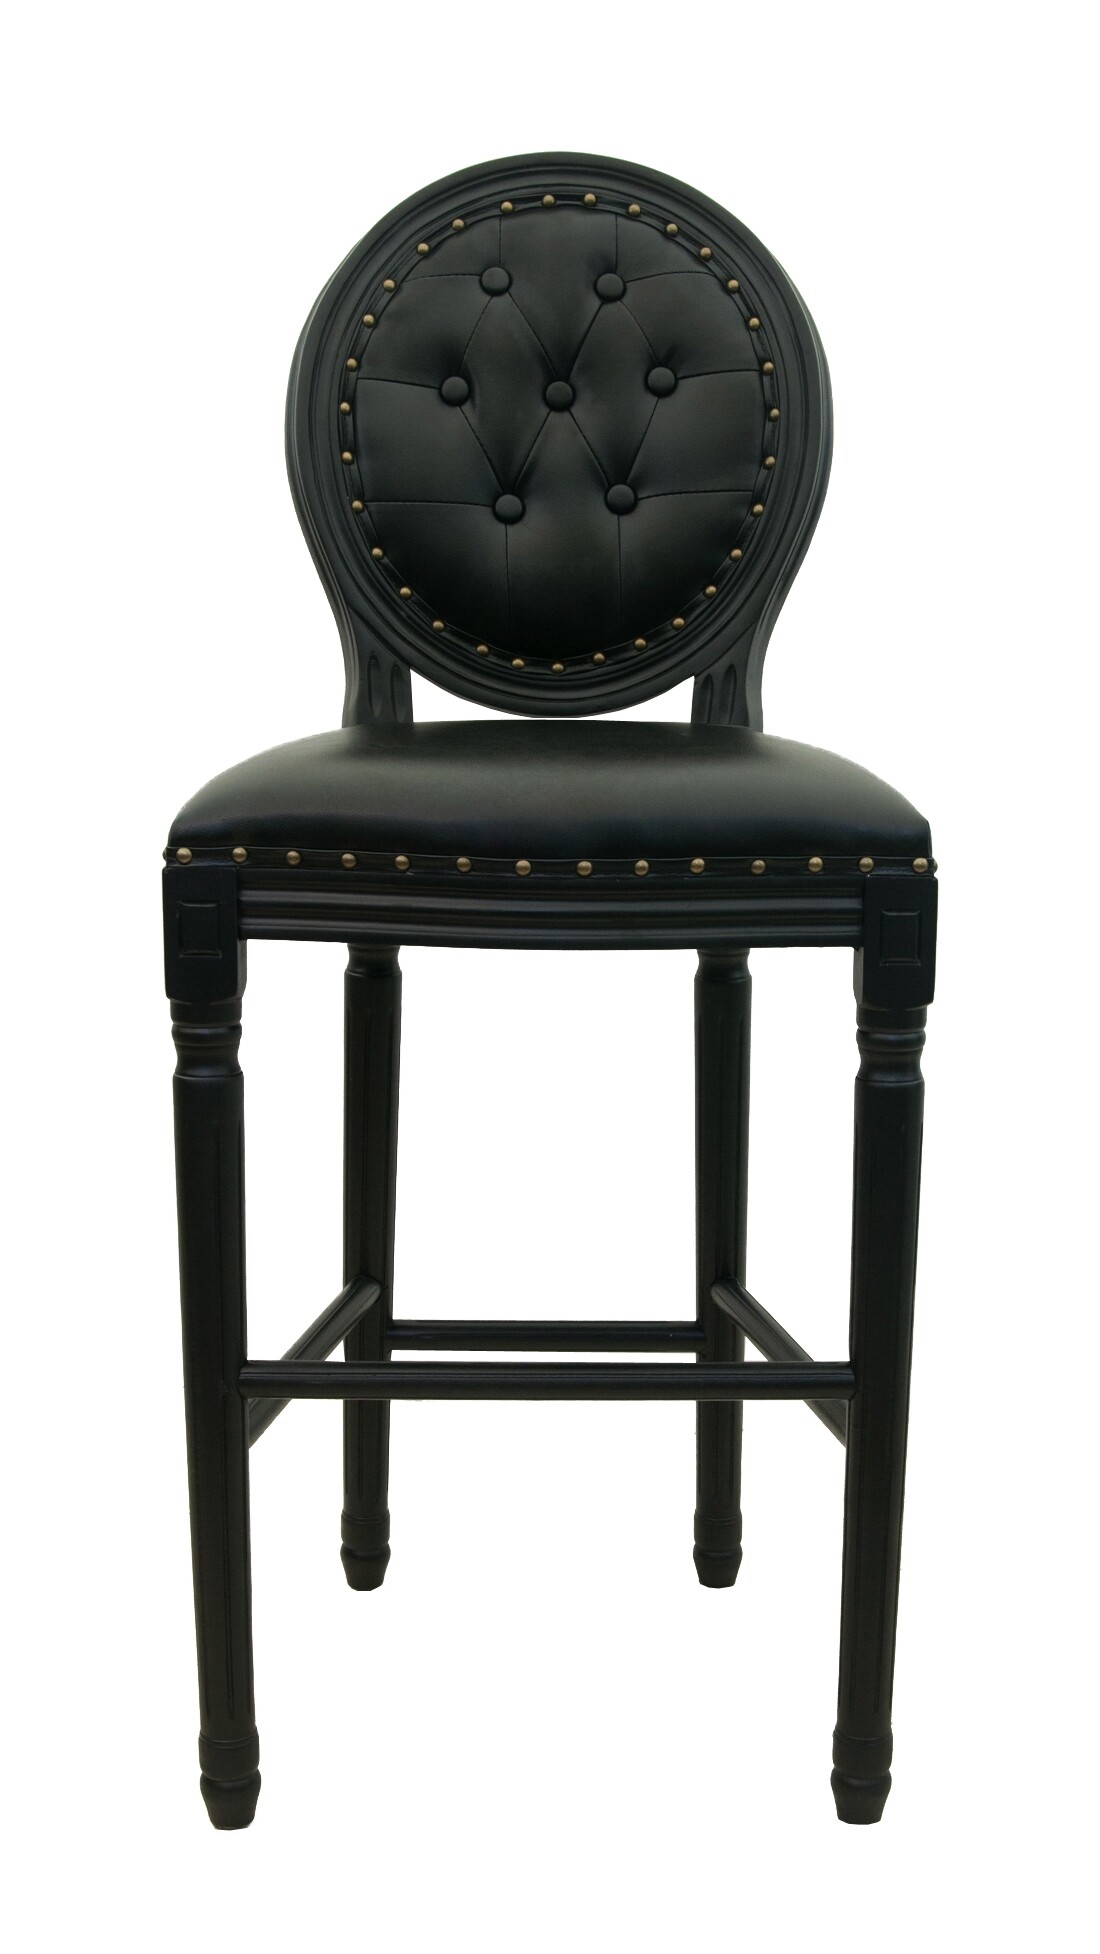 Барный стул со спинкой и стяжкой черный Filon button black